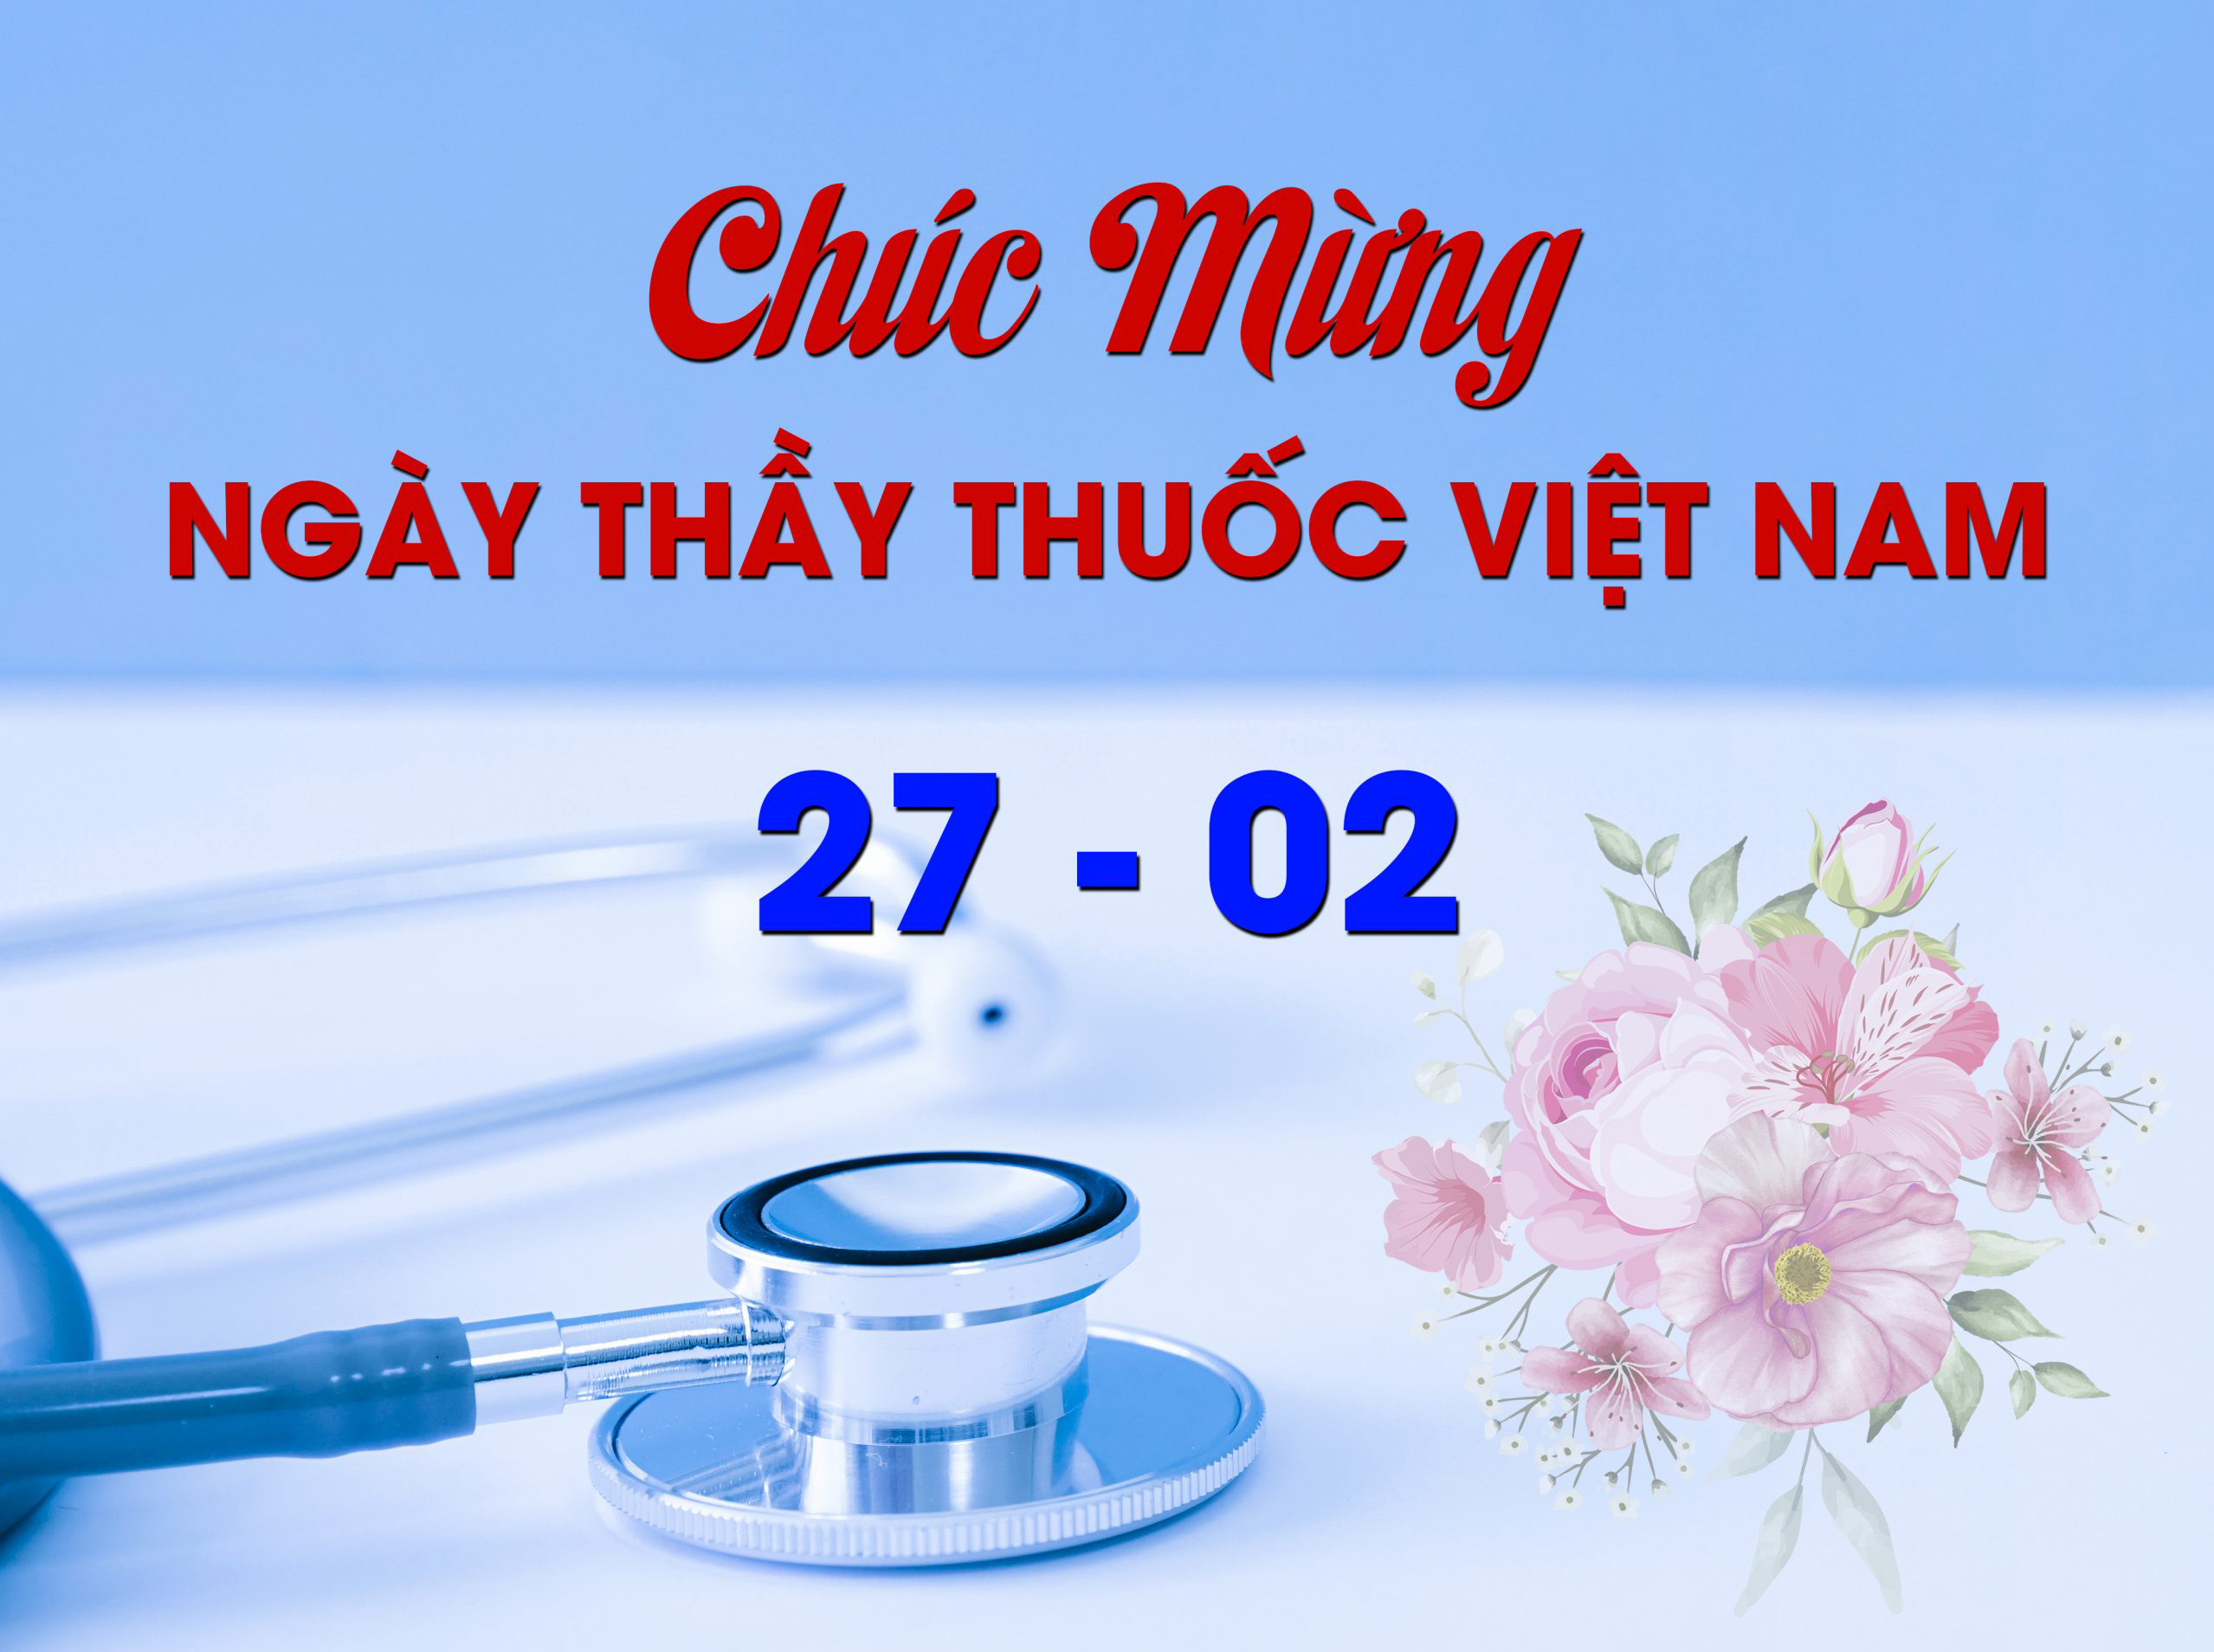 Kế hoạch tổ chức kỷ niệm 68 năm ngày Thầy thuốc Việt Nam 27/02/1955 – 27/02/2023